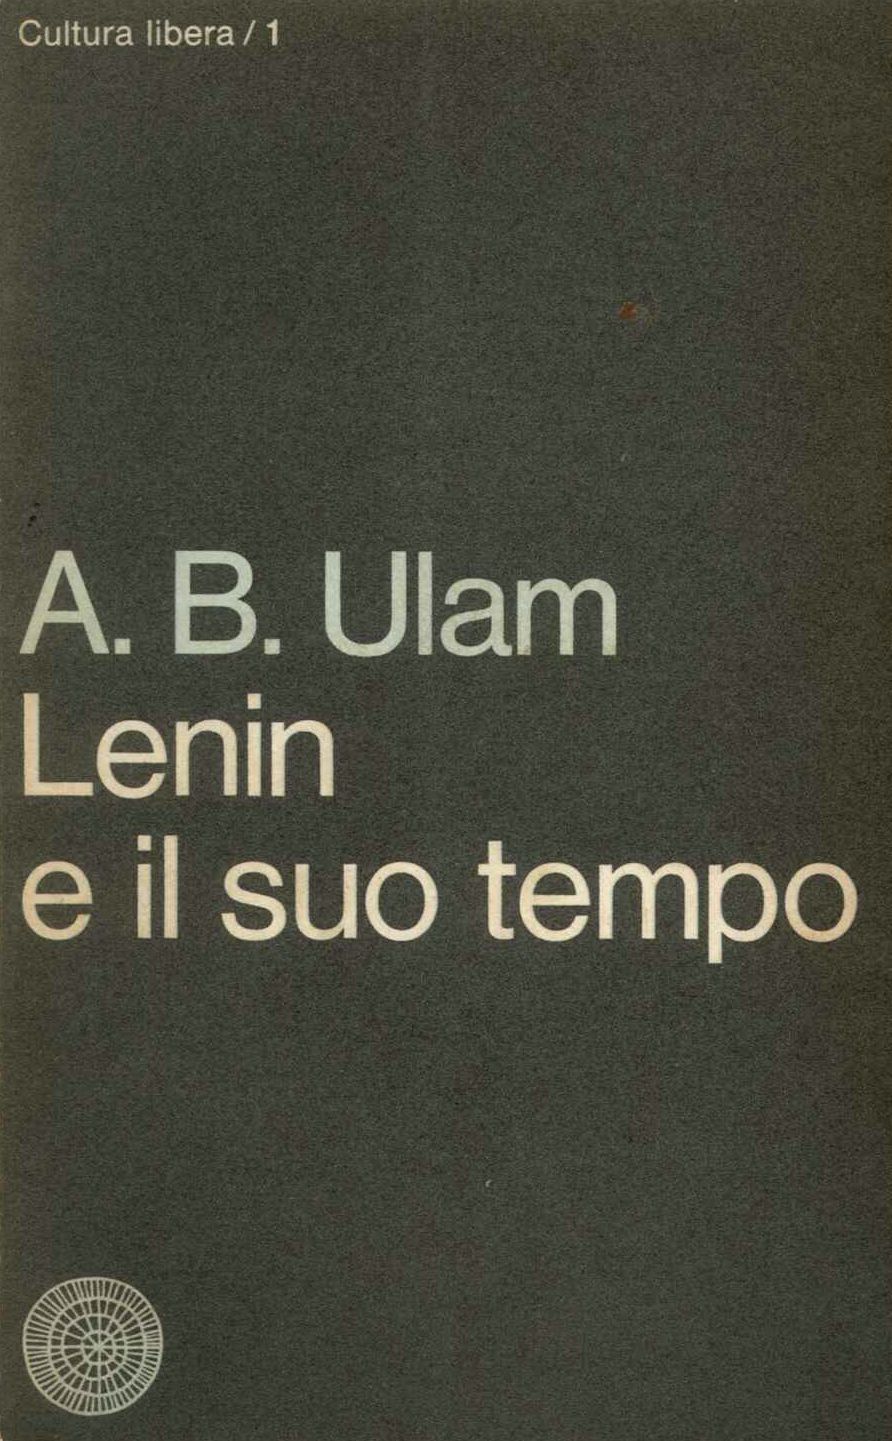 Lenin e il suo tempo 2° volume